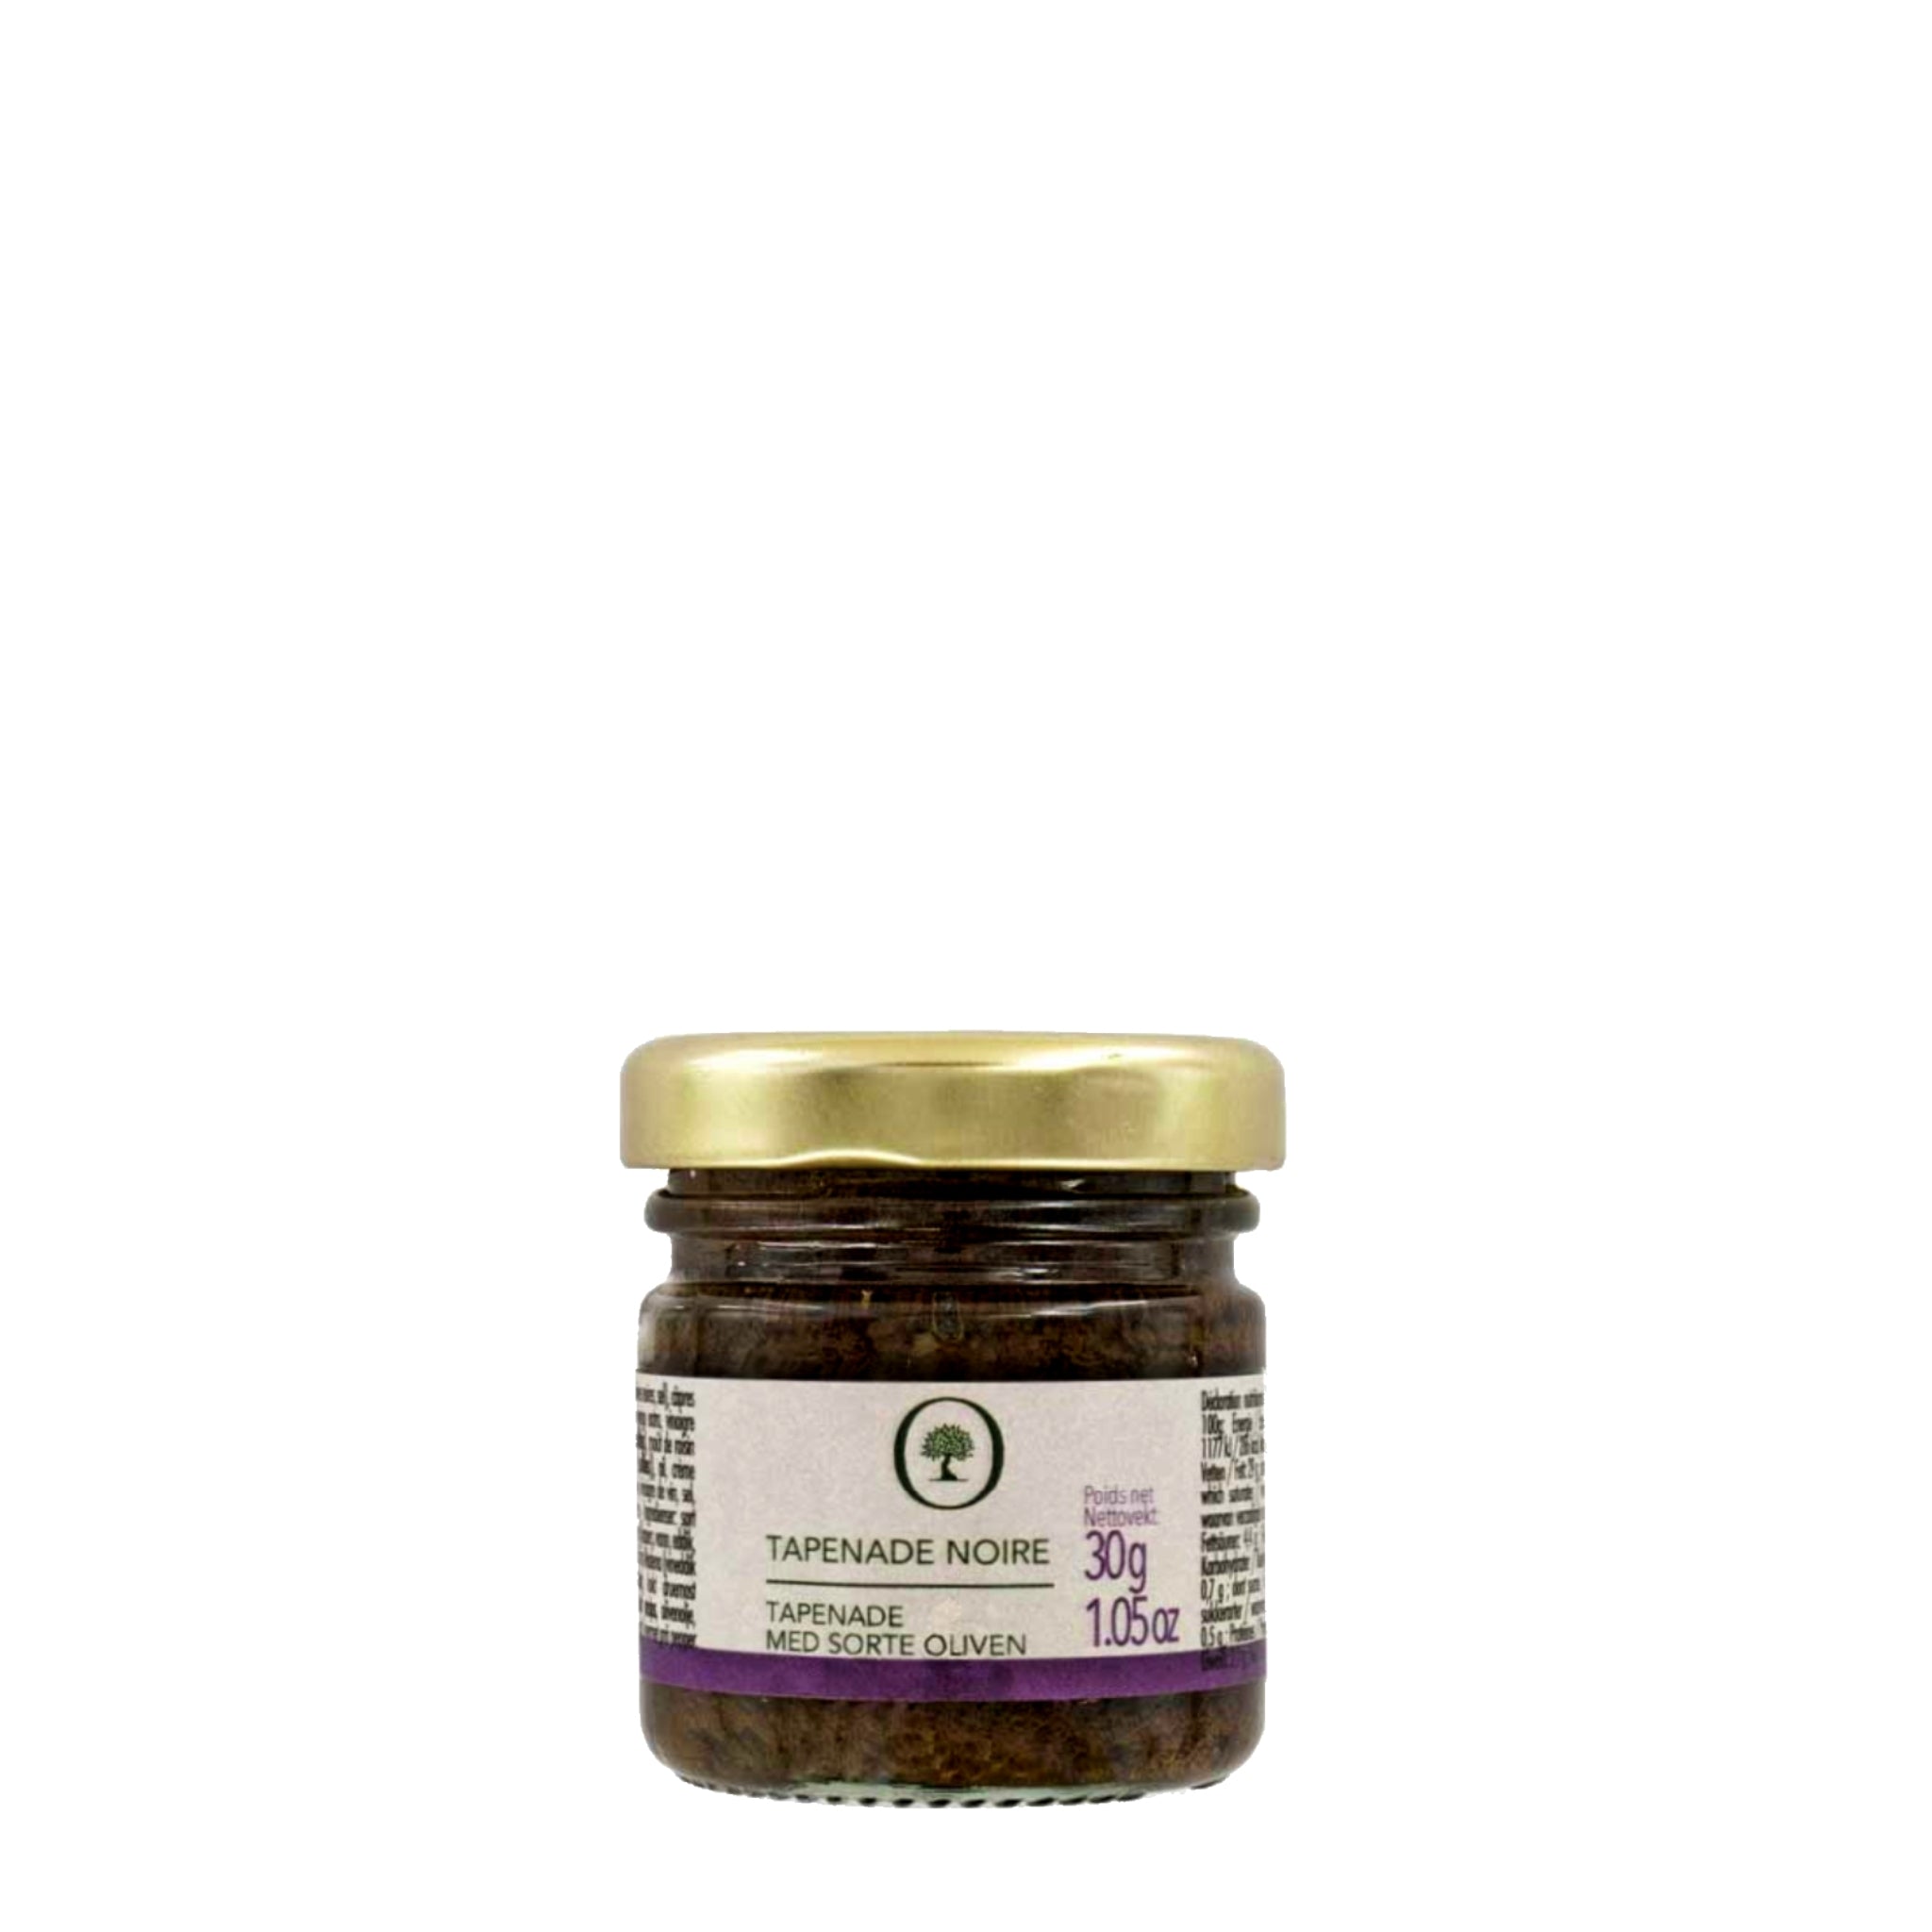 Mini tapenade med sorte oliven, 30g fra Oliviers & Co